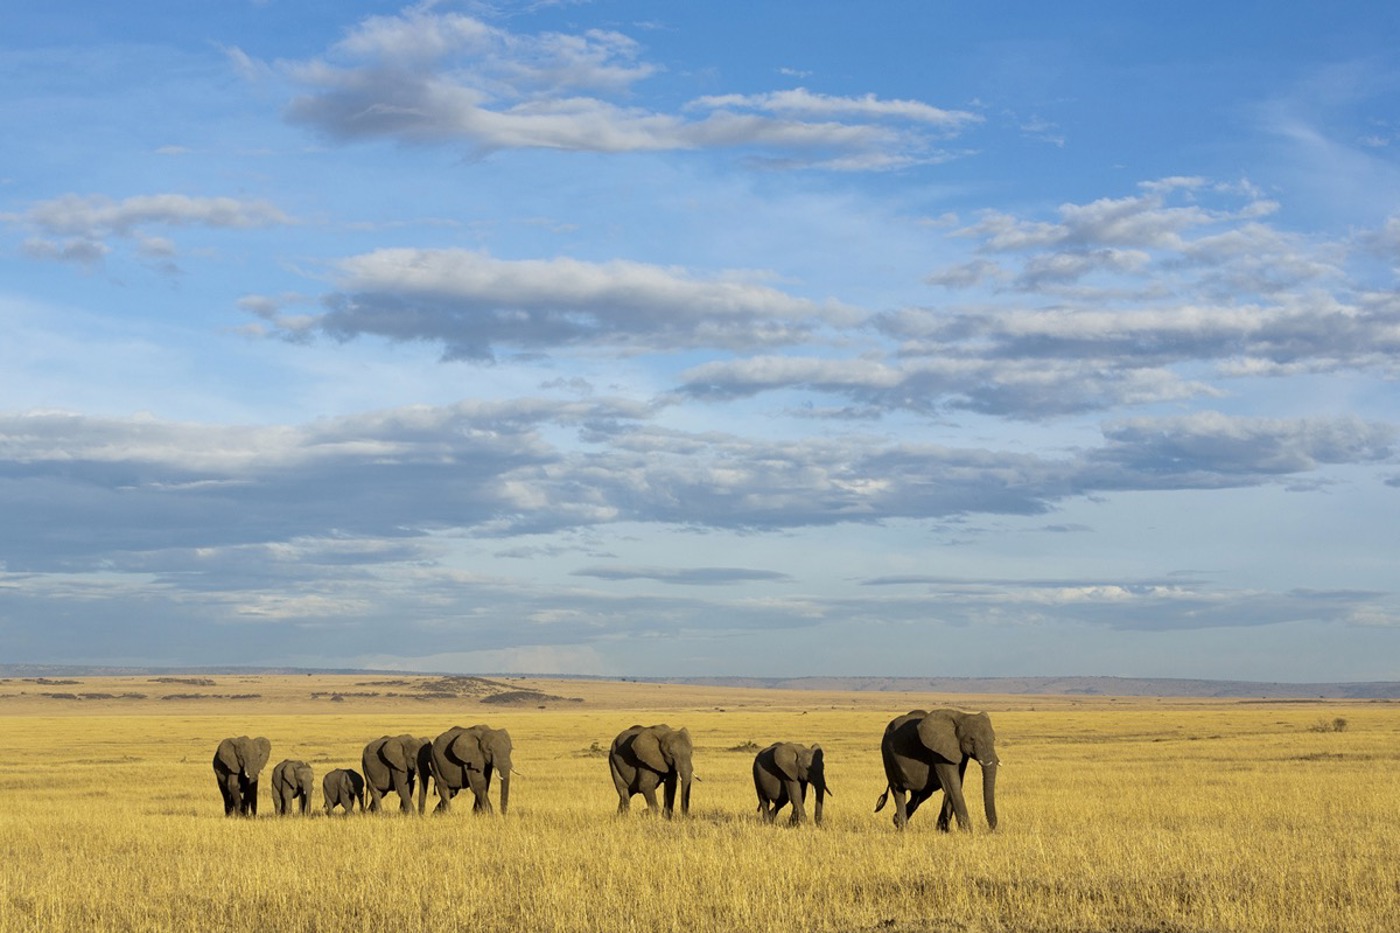 Kenia ist für Naturreisen sehr beliebt. Hier gibt es u. a. «The Big Five» Afrikas zu sehen, darunter den Afrikanischen Elefanten. Diese Herde ist unterwegs im Masai-Mara Game Reserve. © Denis-Huot/naturepl.com